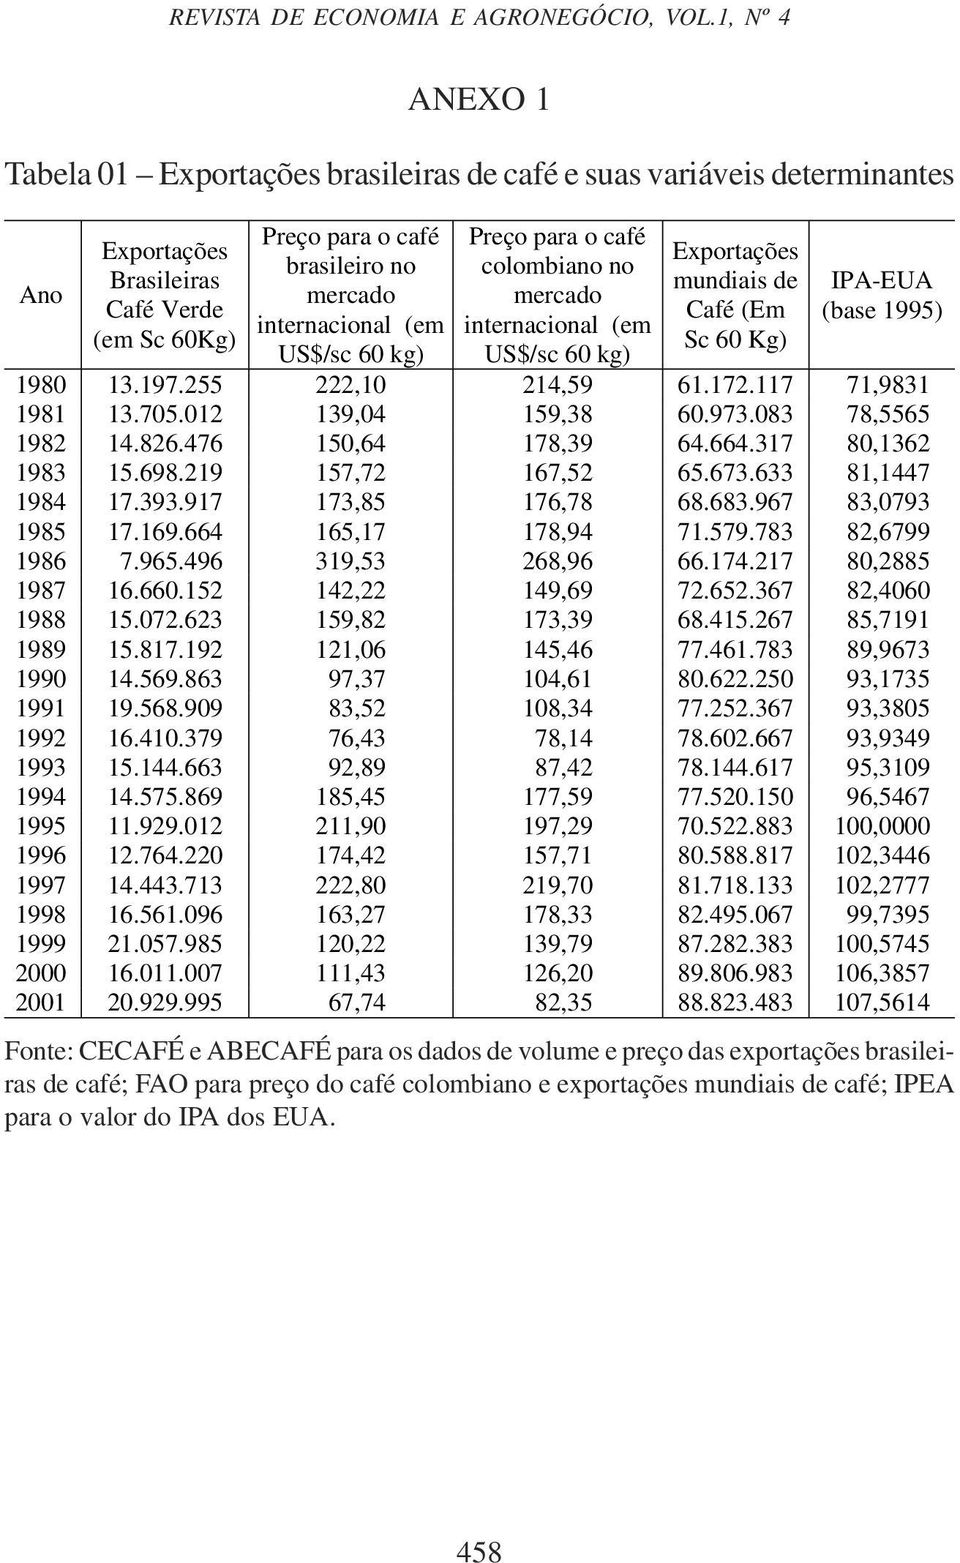 determinantes Preço para o café colombiano no mercado internacional (em US$/sc 60 kg) Exportações mundiais de Café (Em Sc 60 Kg) IPA-EUA (base 1995) 1980 13.197.255 222,10 214,59 61.172.